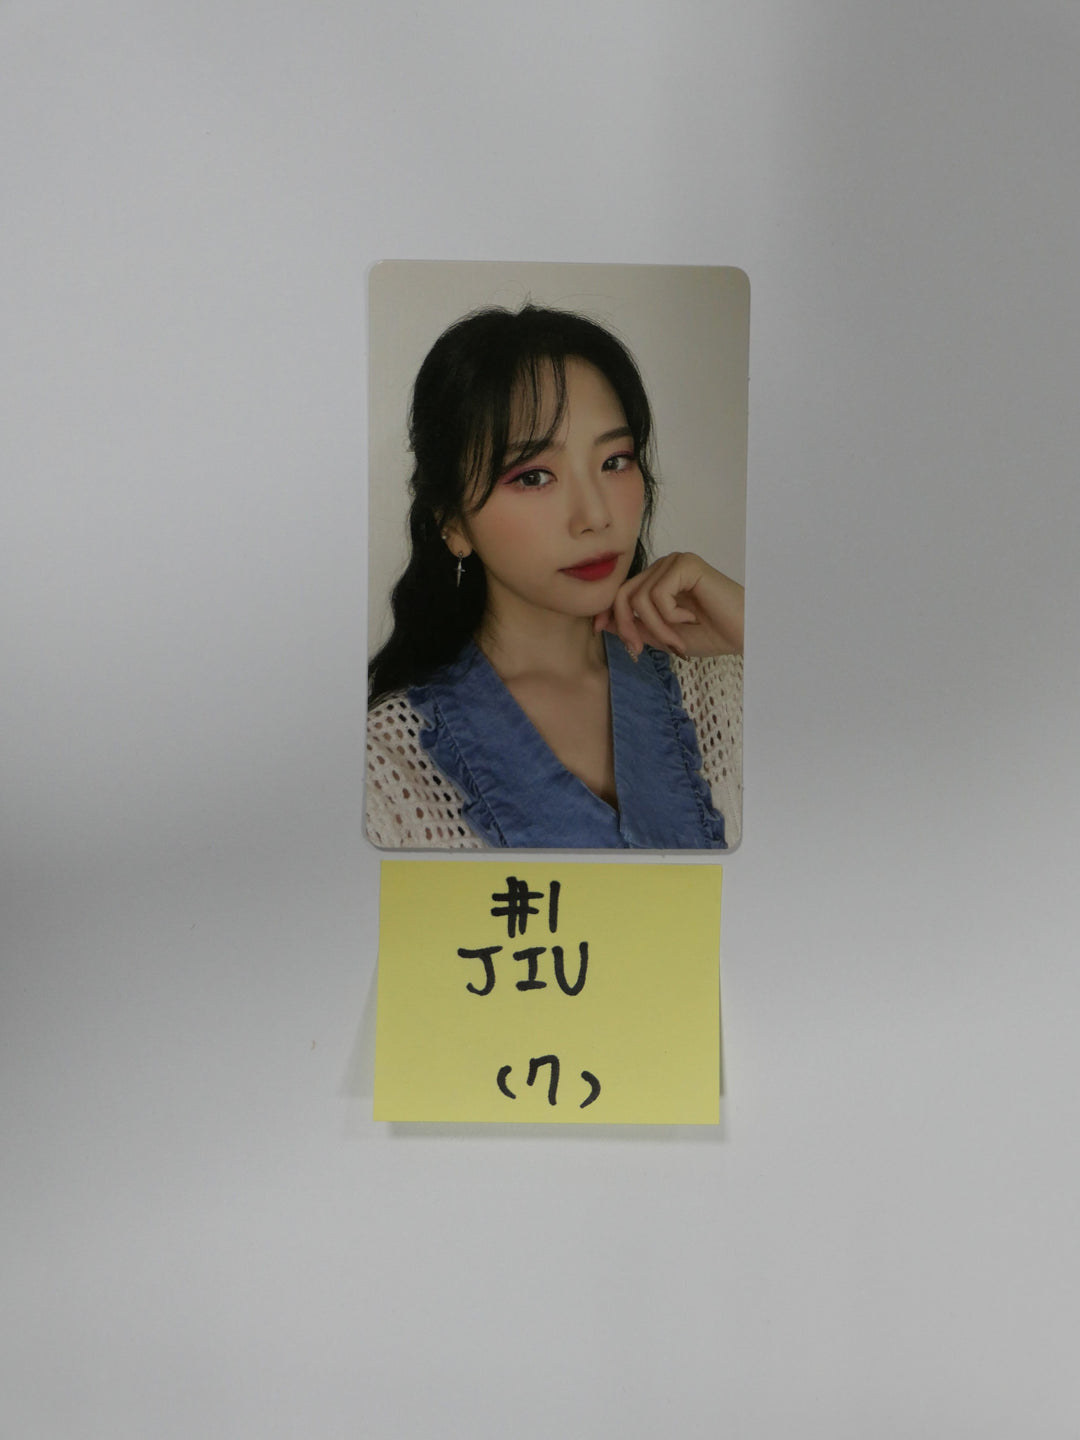 Dreamcatcher "Summer Holiday" - Official Photocard (Jiu, Sua, Siyeon )